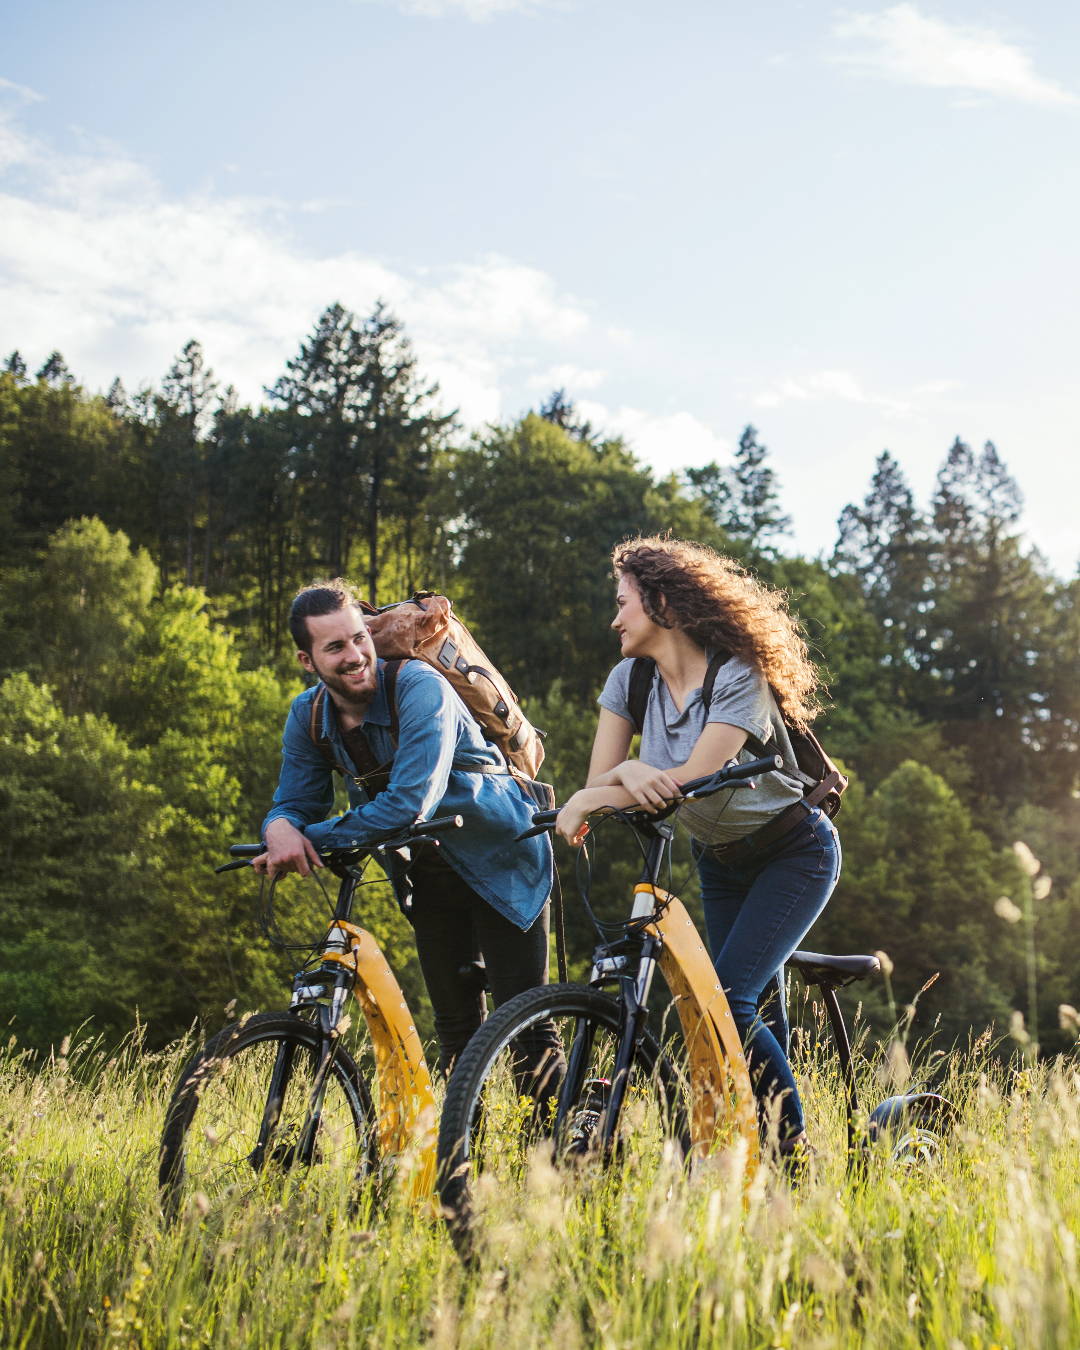 Qu’est-ce qu’une allergie aux graminées? Ce couple fait du vélo dans un pré d’herbes hautes – ils maîtrisent leurs symptômes.